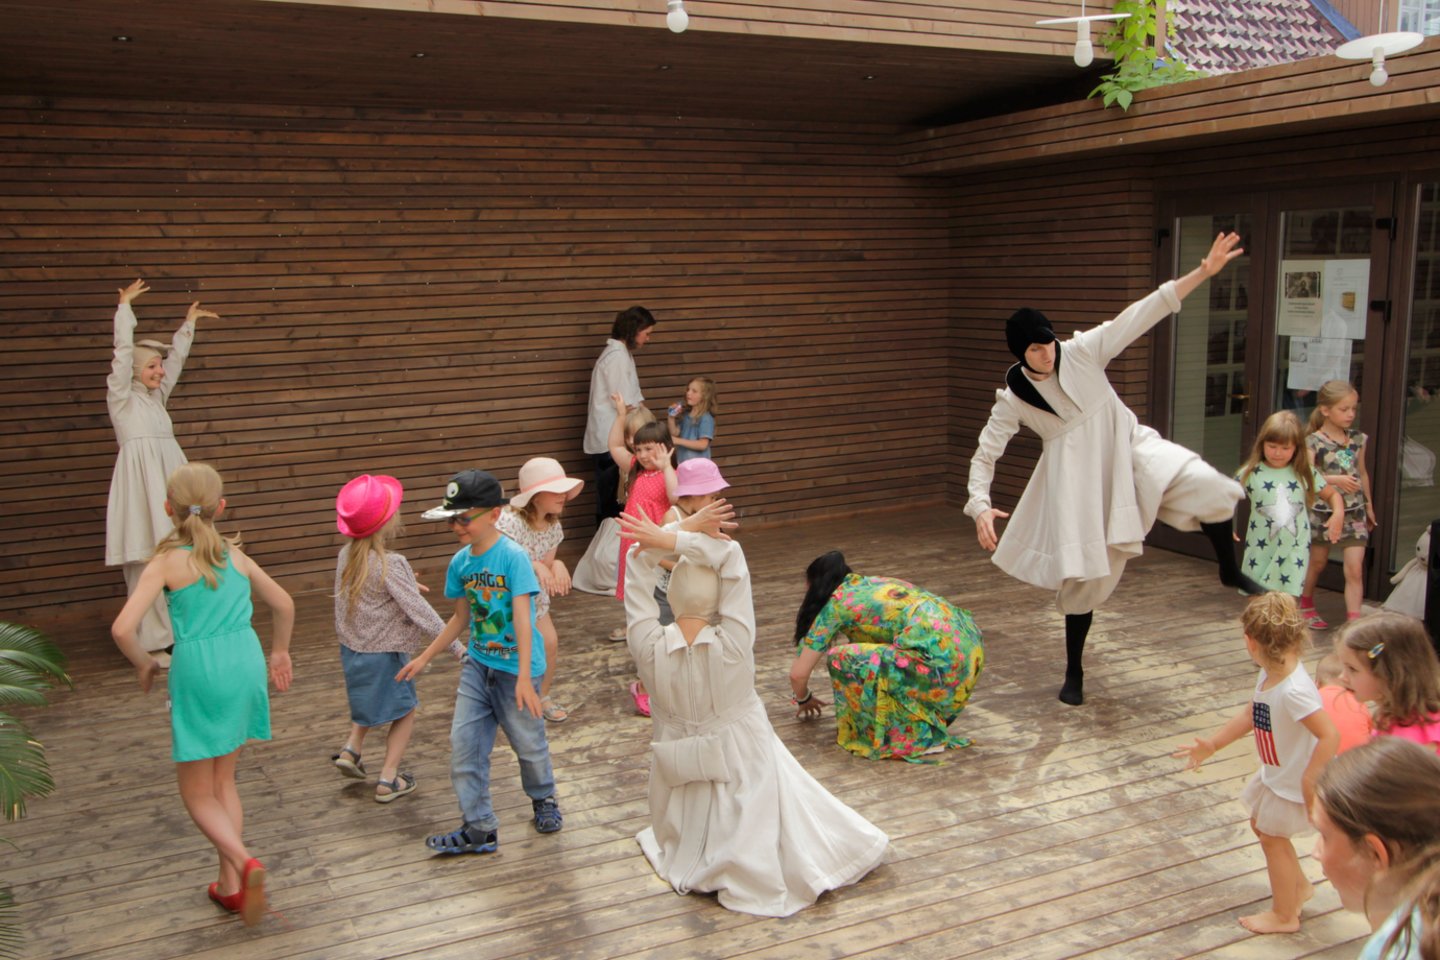 Šeiko šokio teatras Kultūros fabriko kieme organizuos atvirą kūrybinę šokio ir judesio laboratoriją visai šeimai <br> V.Bartašiūtės nuotr.